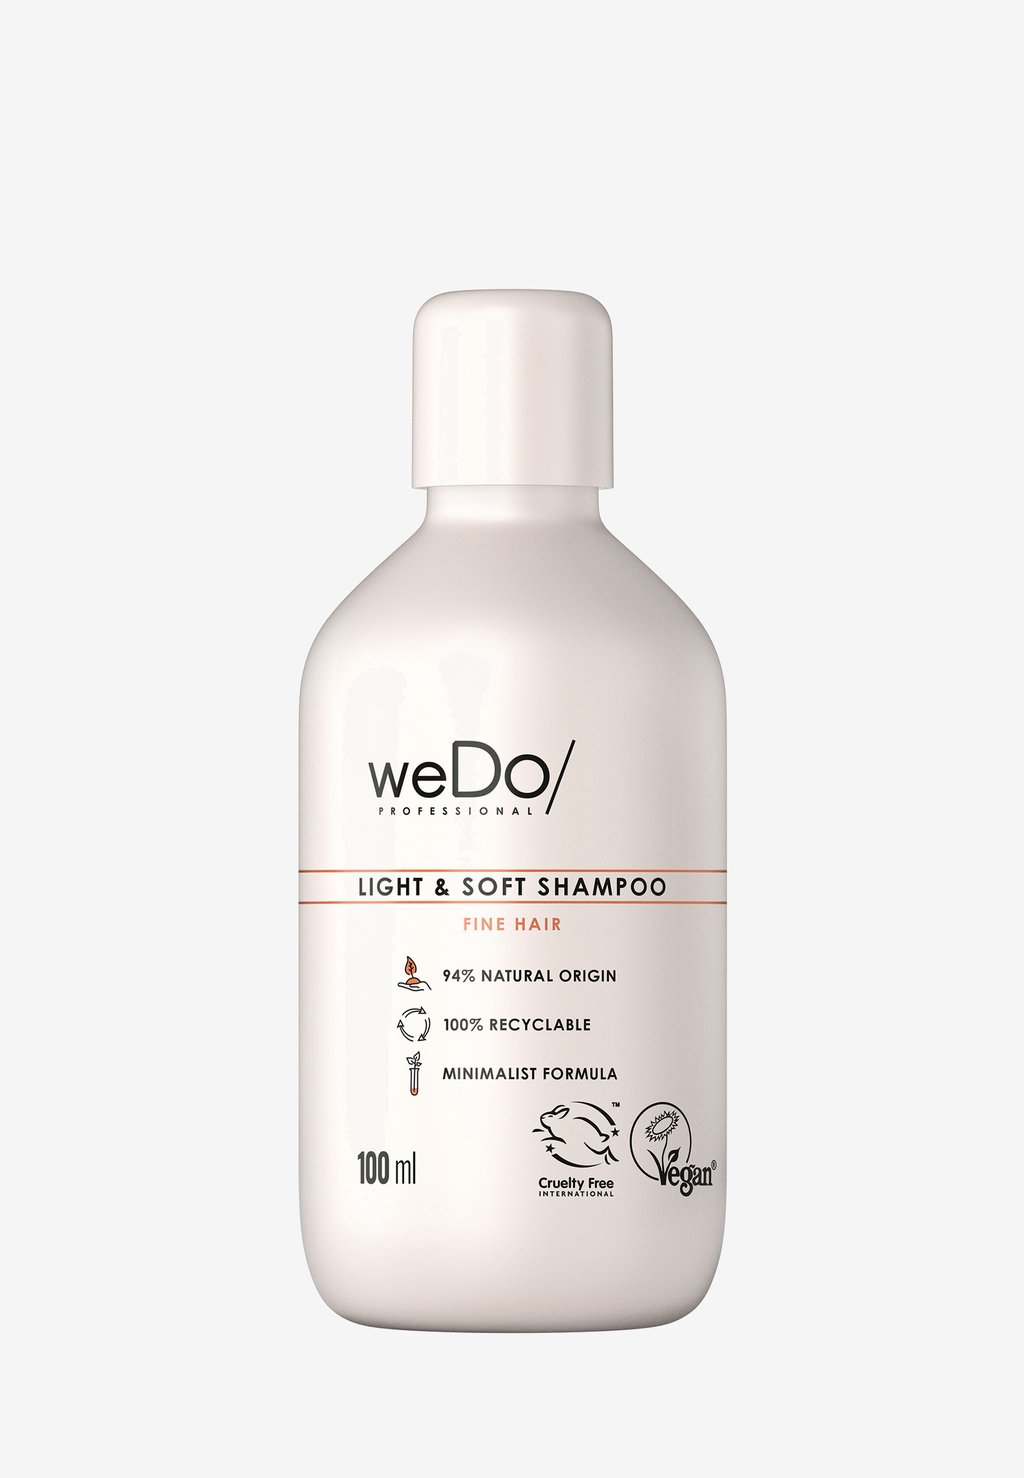 Шампунь Light & Soft Shampoo weDo/ Professional люстра wedo light 66005 01 05 08 лестари